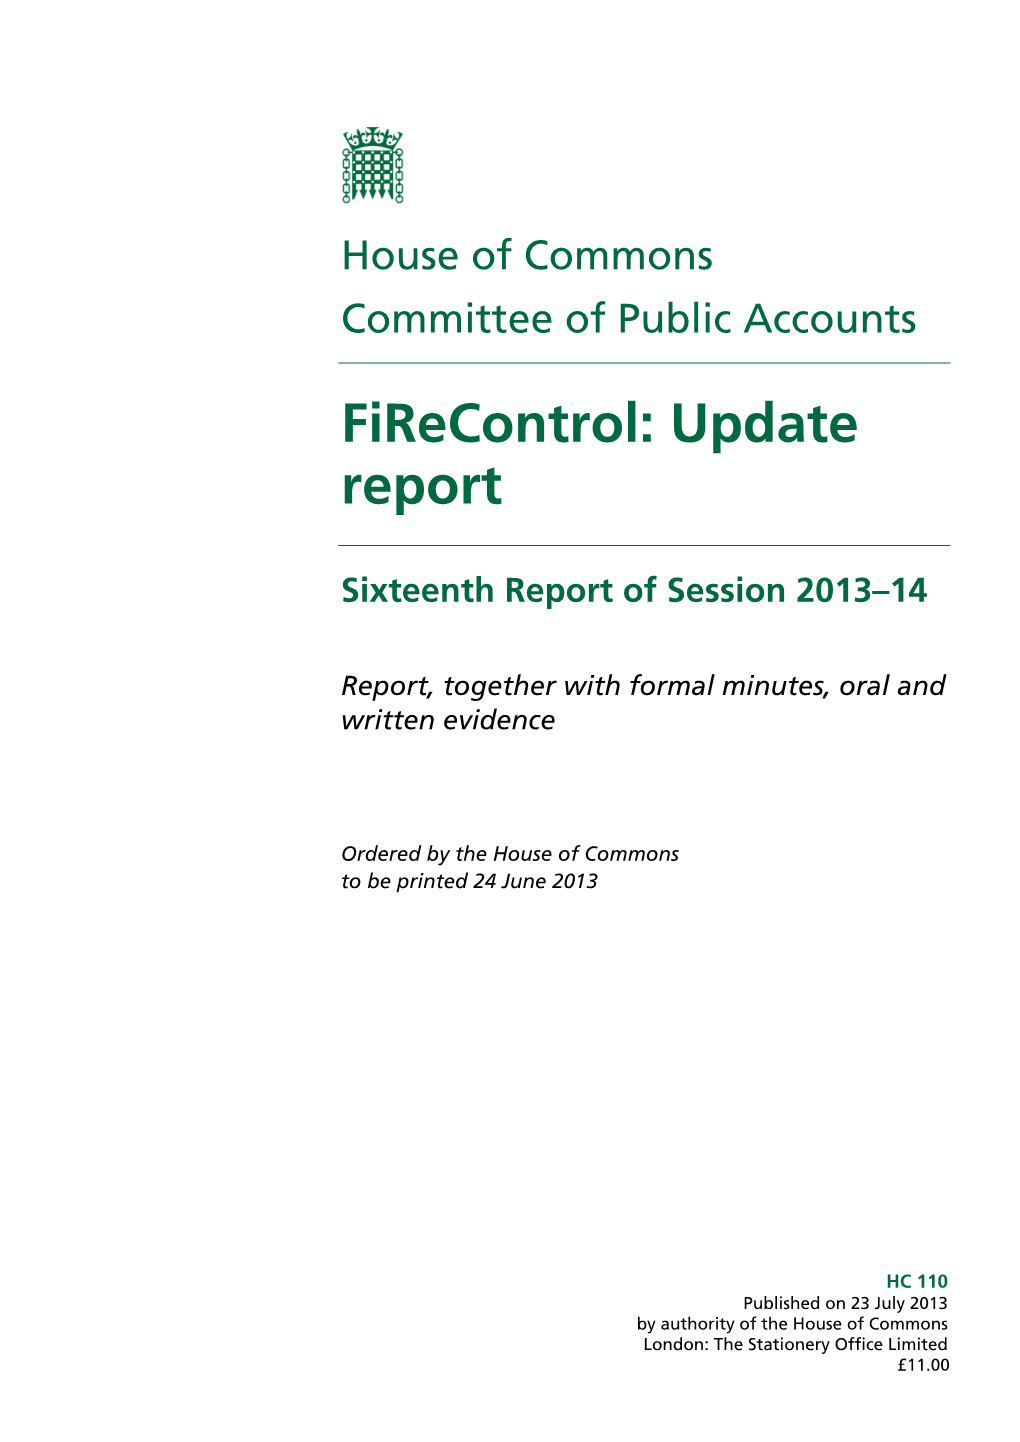 Firecontrol: Update Report